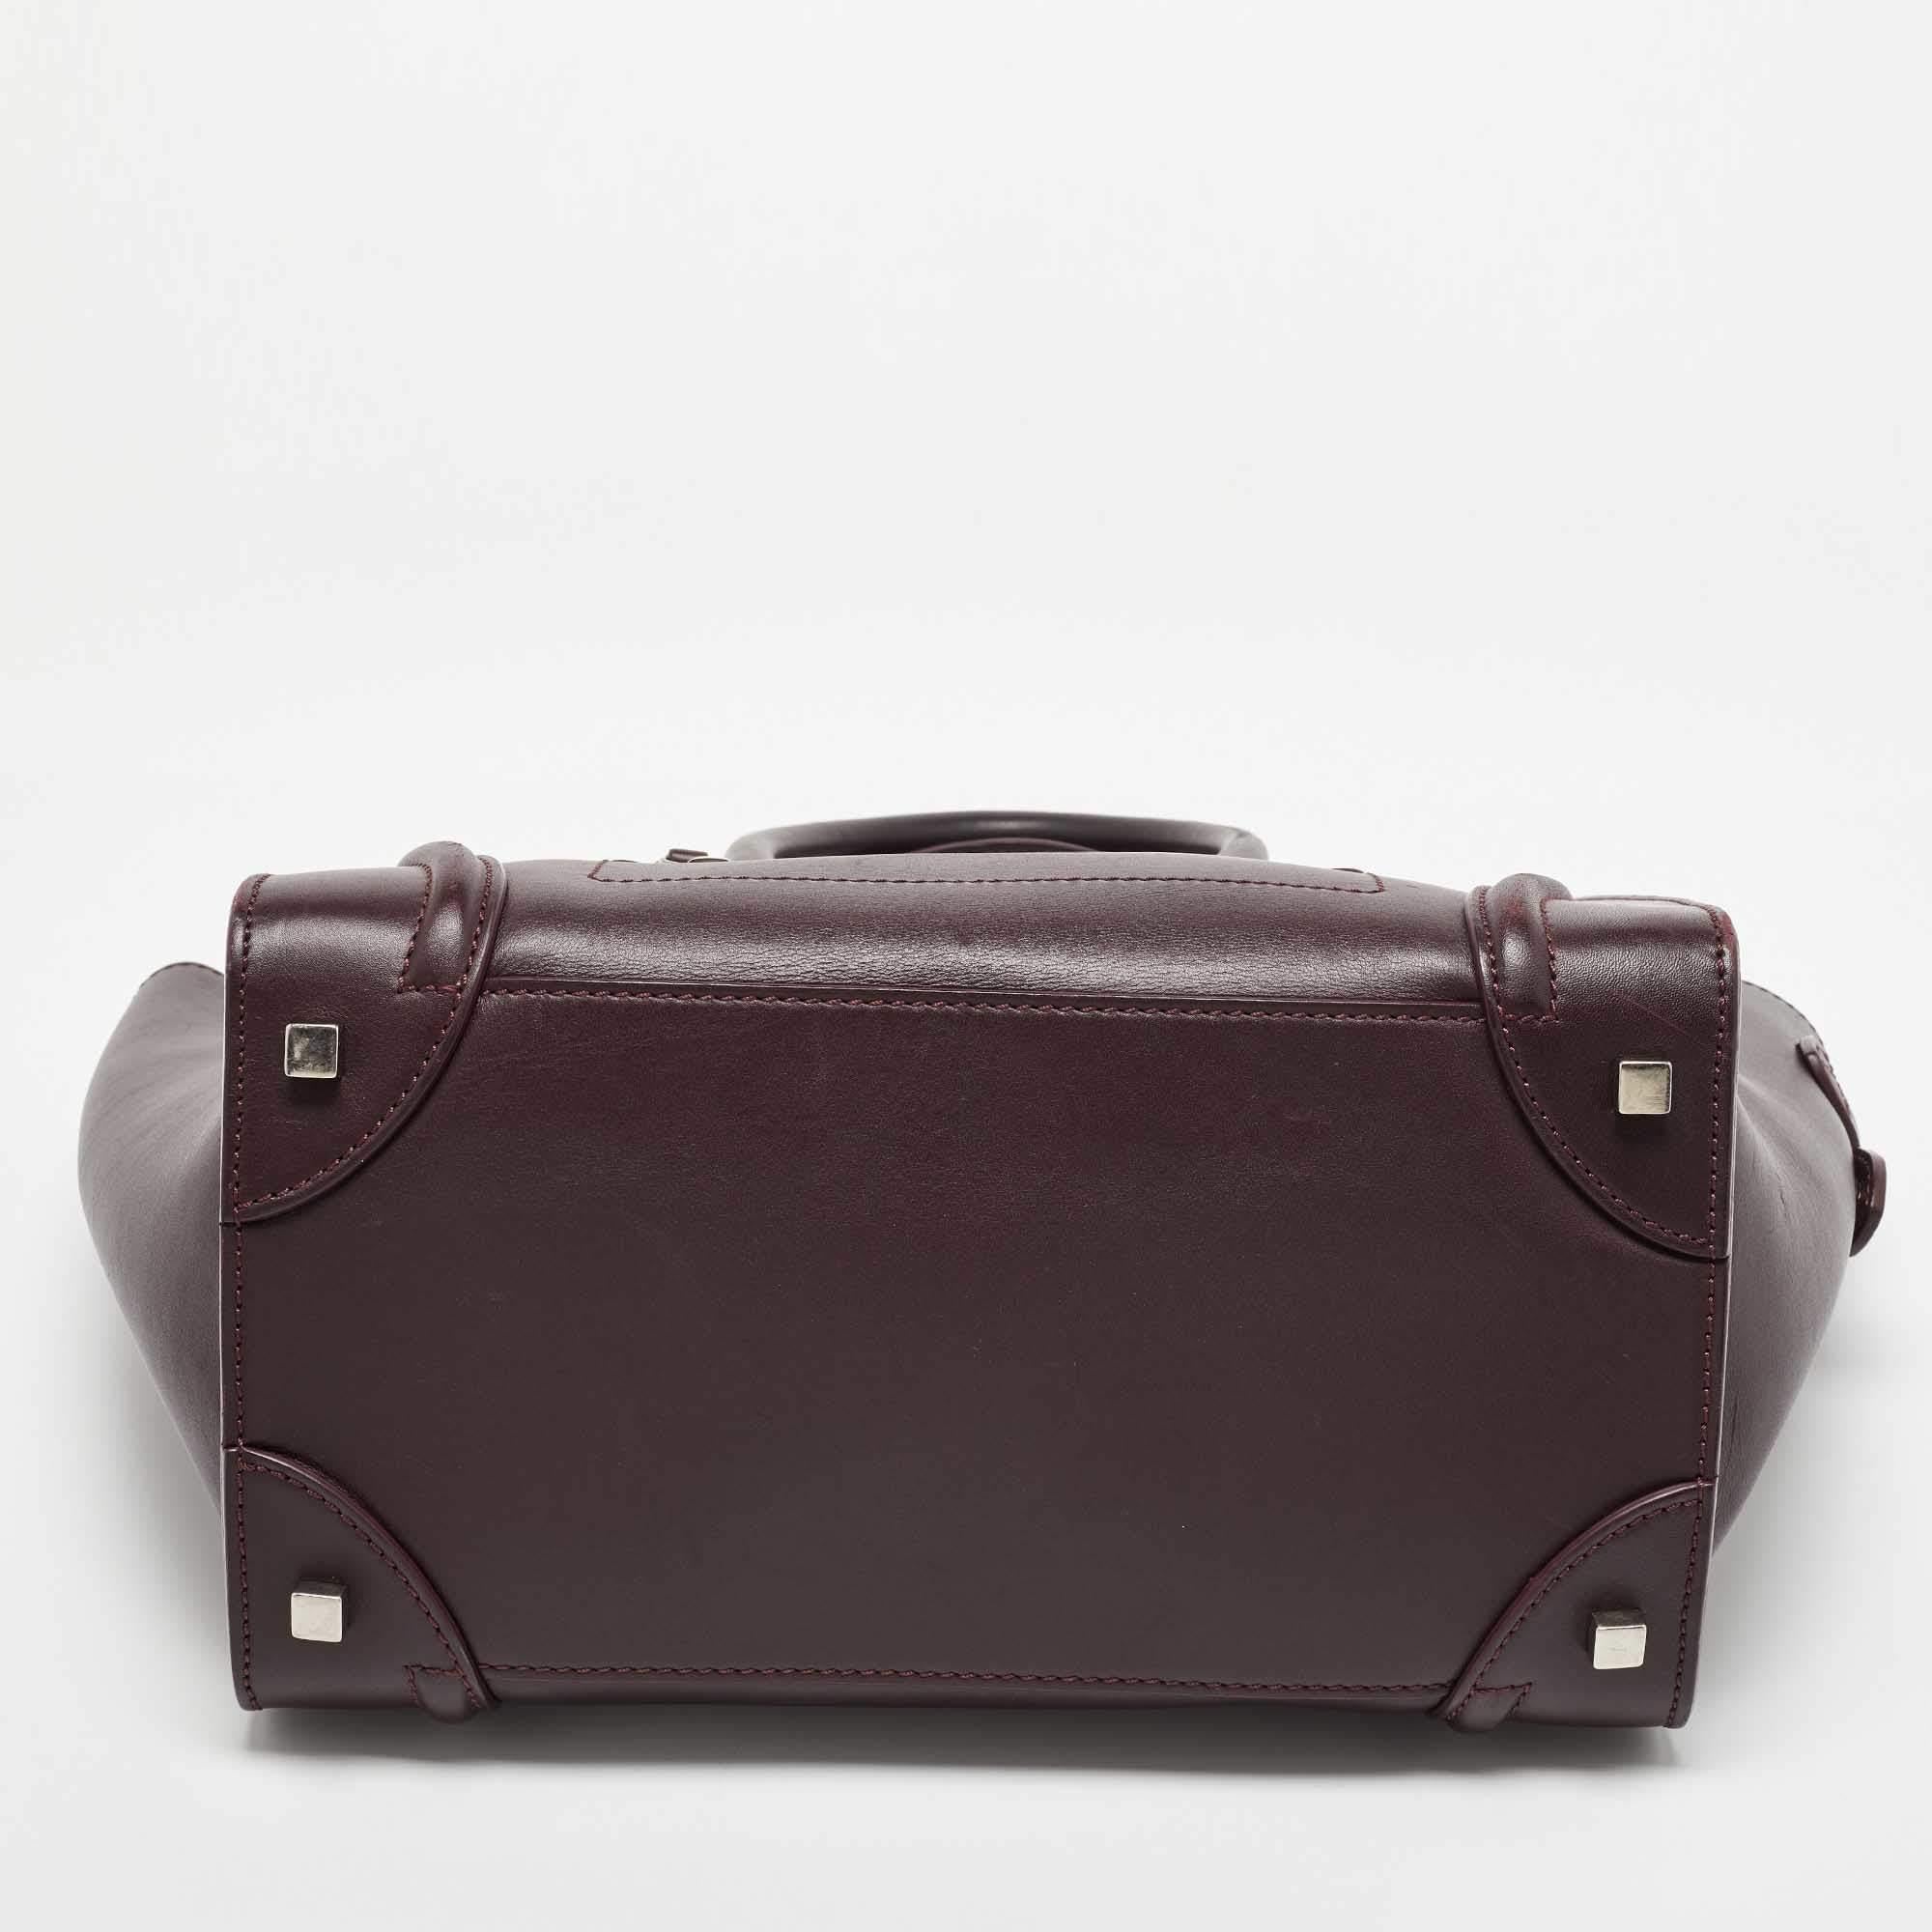 Celine Dark Burgundy Leather Mini Luggage Tote 7